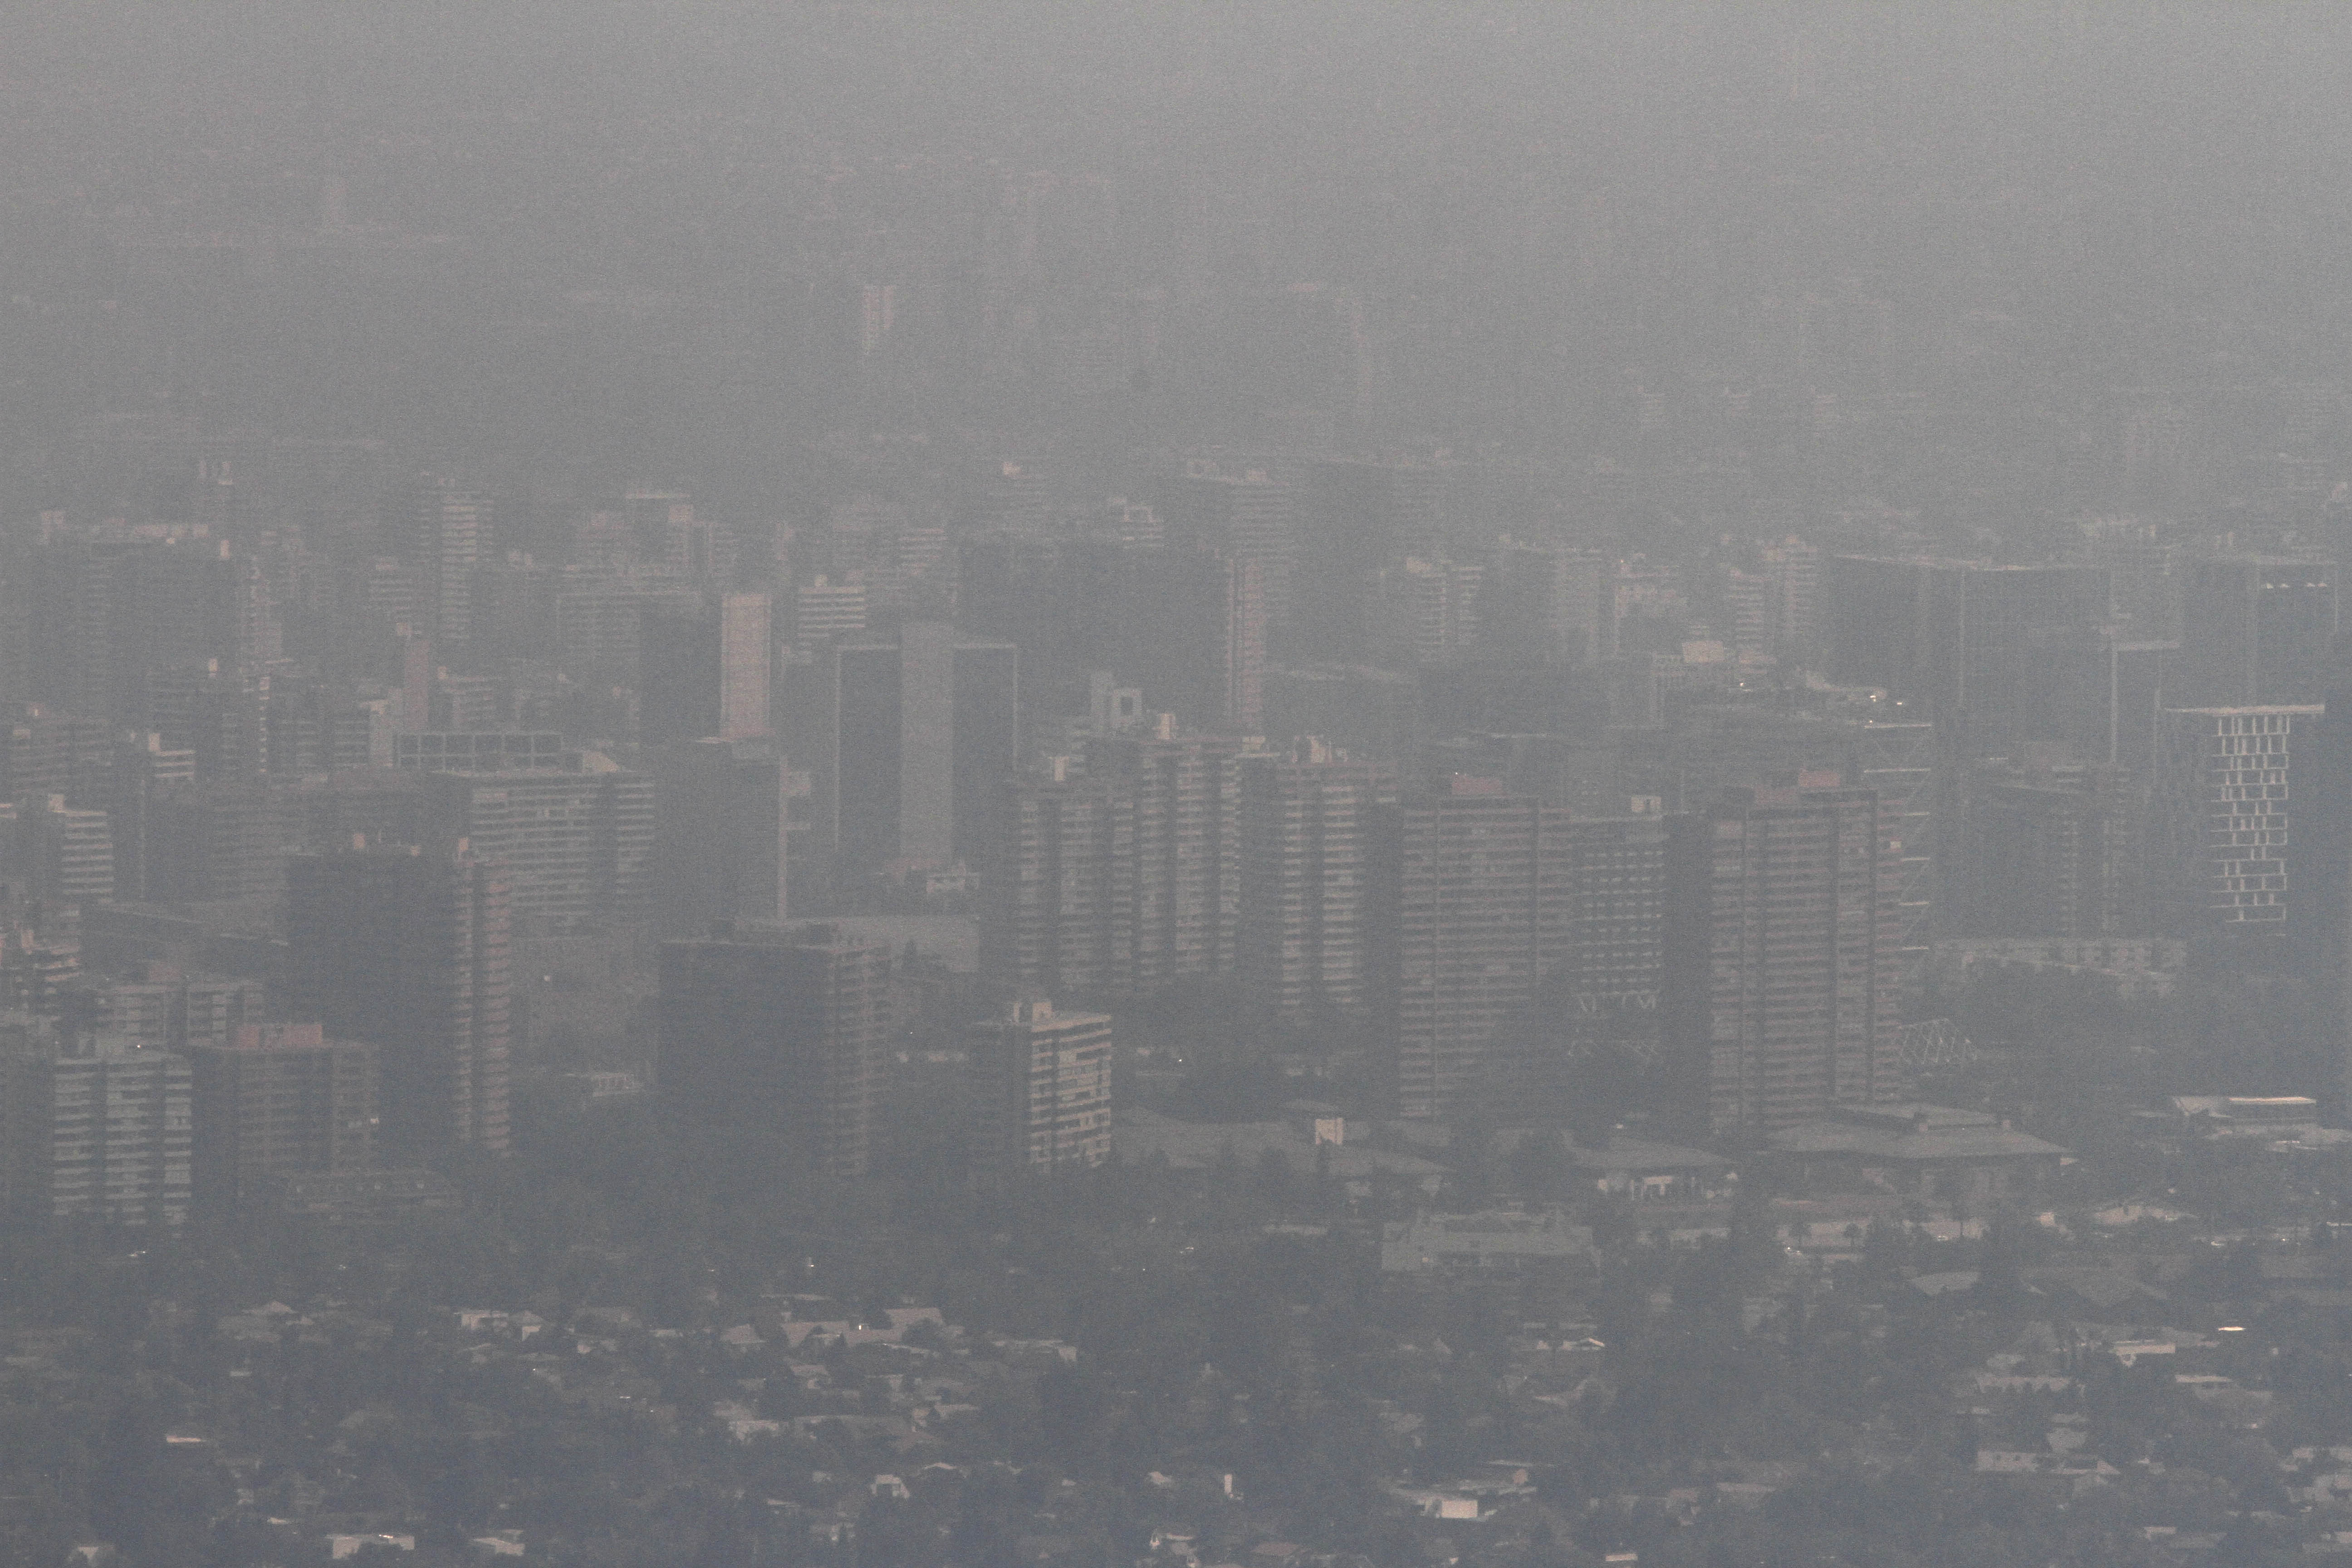 Vista panoramica de Santiago bajo el humo de los incendios forestales que afectan a la Capital